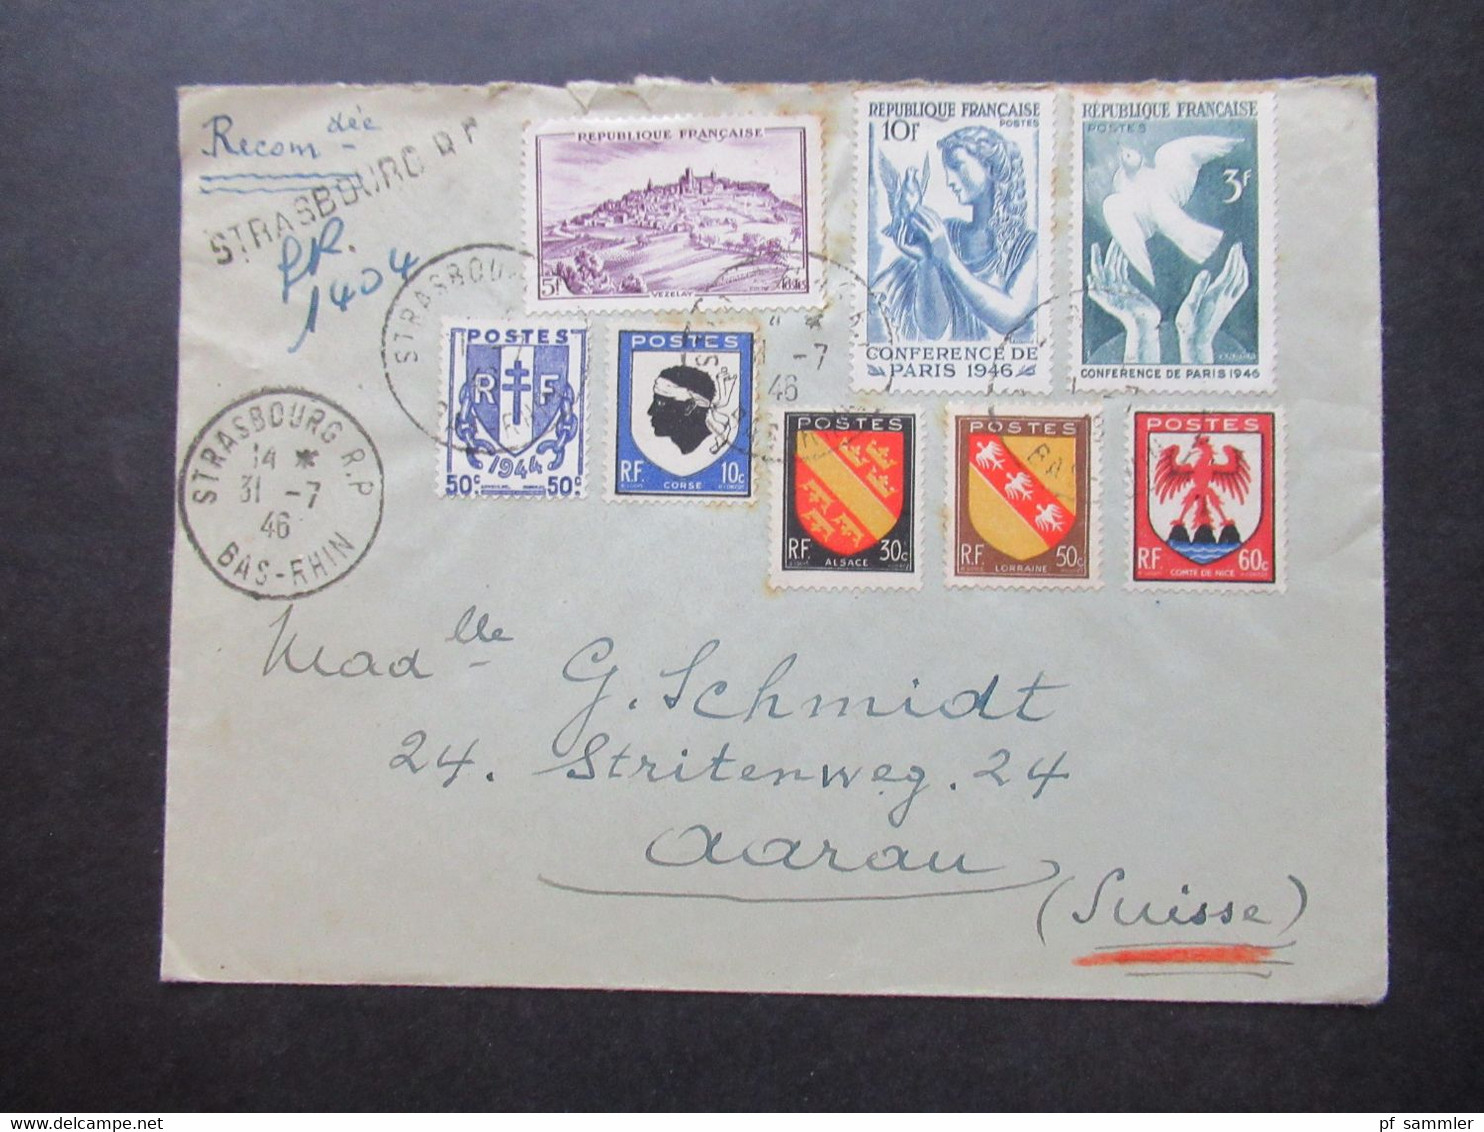 Frankreich 1946 MiF Einschreiben Reco Strasbourg R.P. Nach Aarau Schweiz Mit Ank. Stempel Aarau 1 Briefe - Lettres & Documents